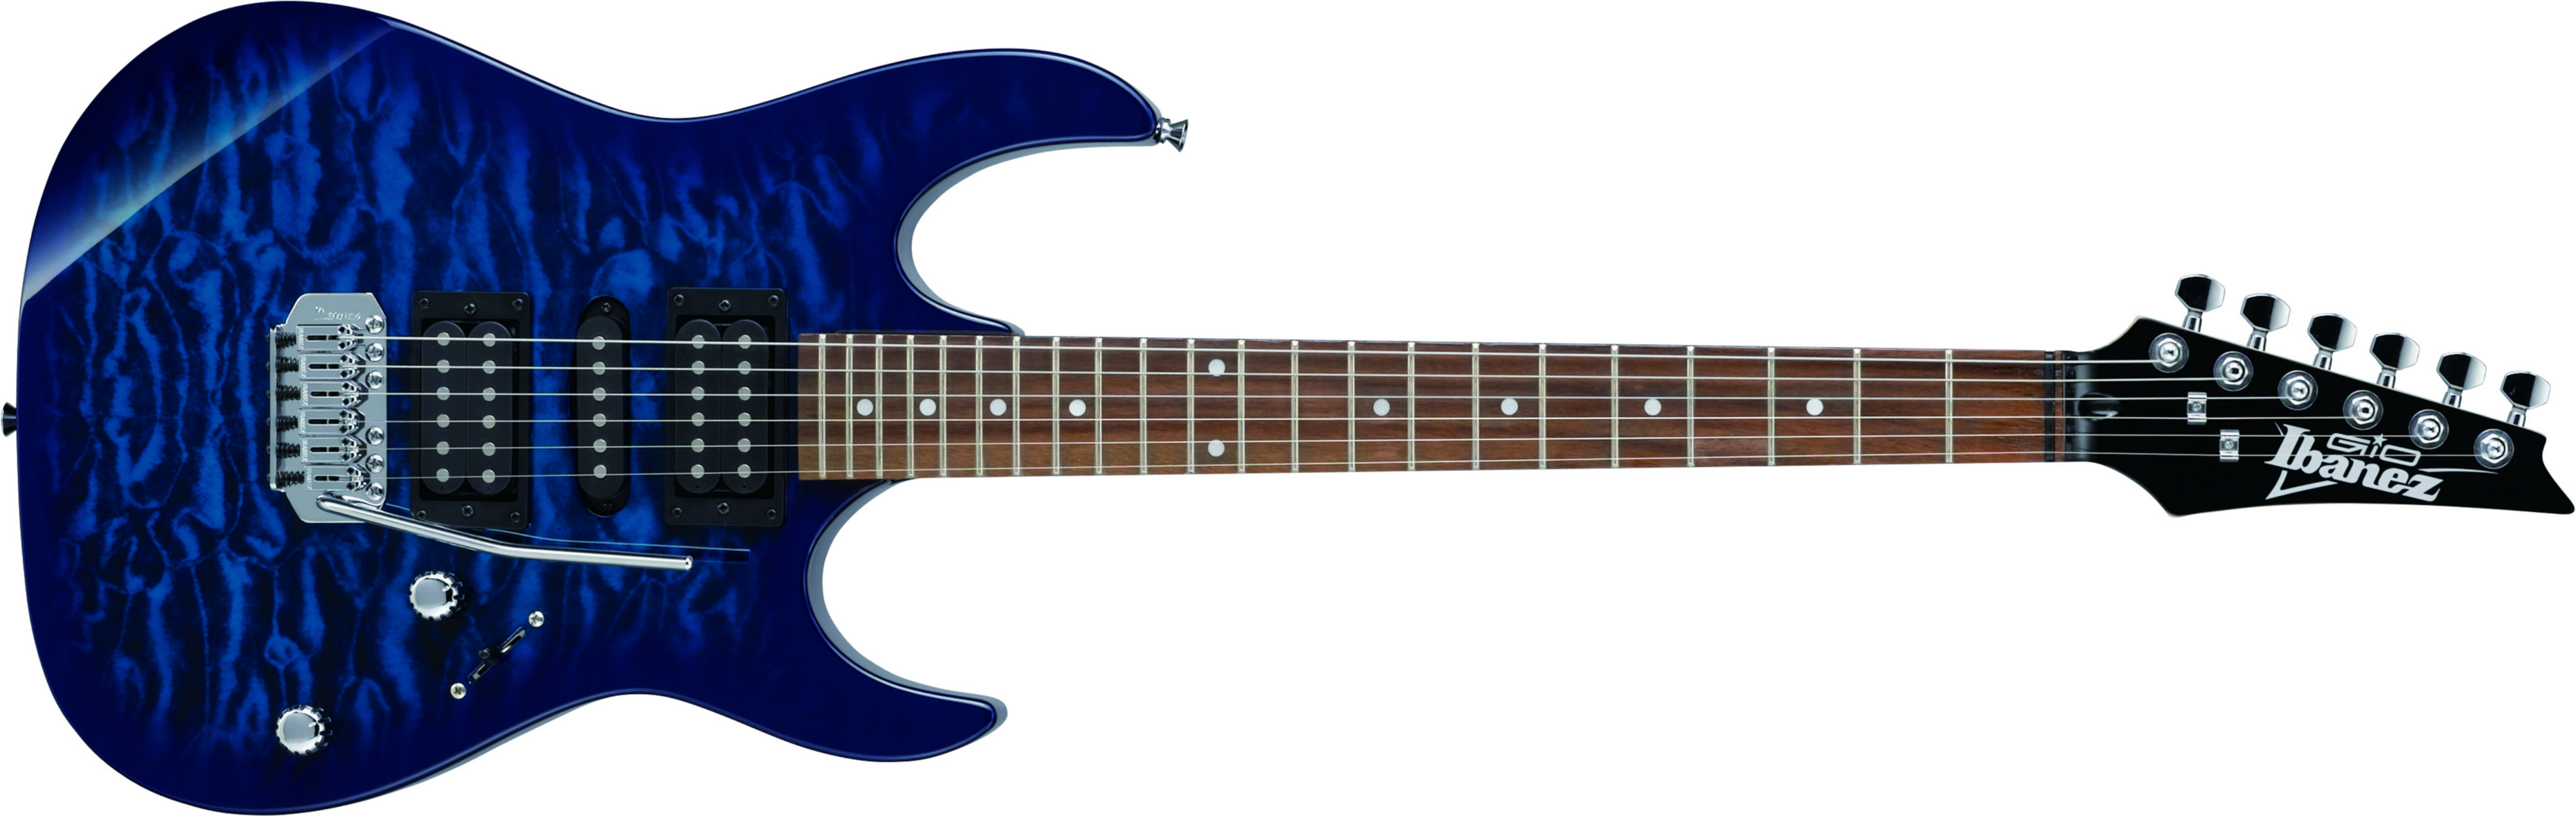 Ibanez Grx70qa Tbb Gio Hsh Trem Nzp - Transparent Blue Burst - Elektrische gitaar in Str-vorm - Main picture